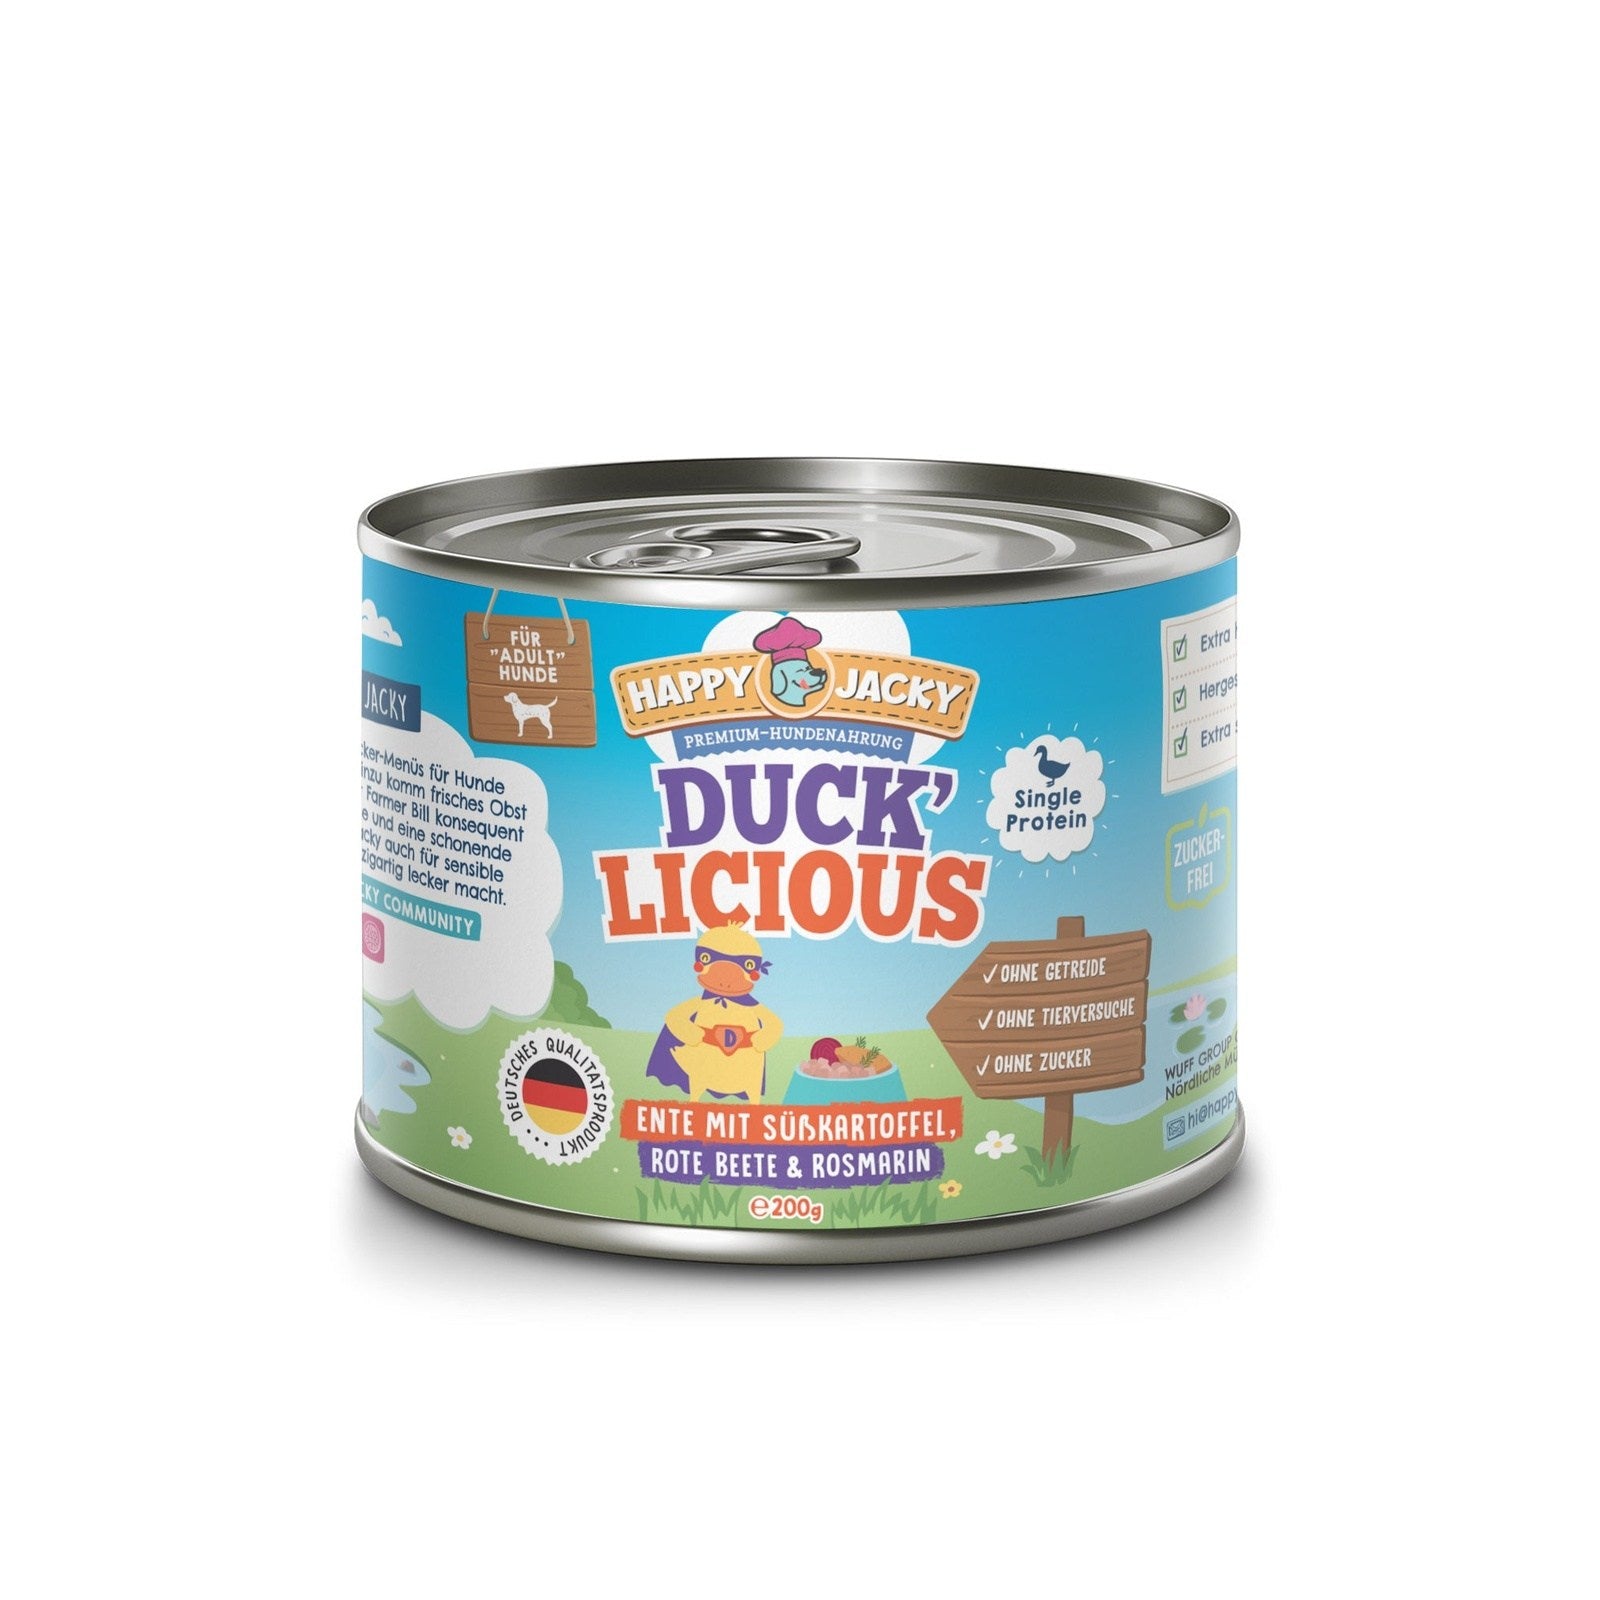 Ducklicious - Ente mit Süßkartoffel, Rote Beete & Rosmarin HAPPY JACKY